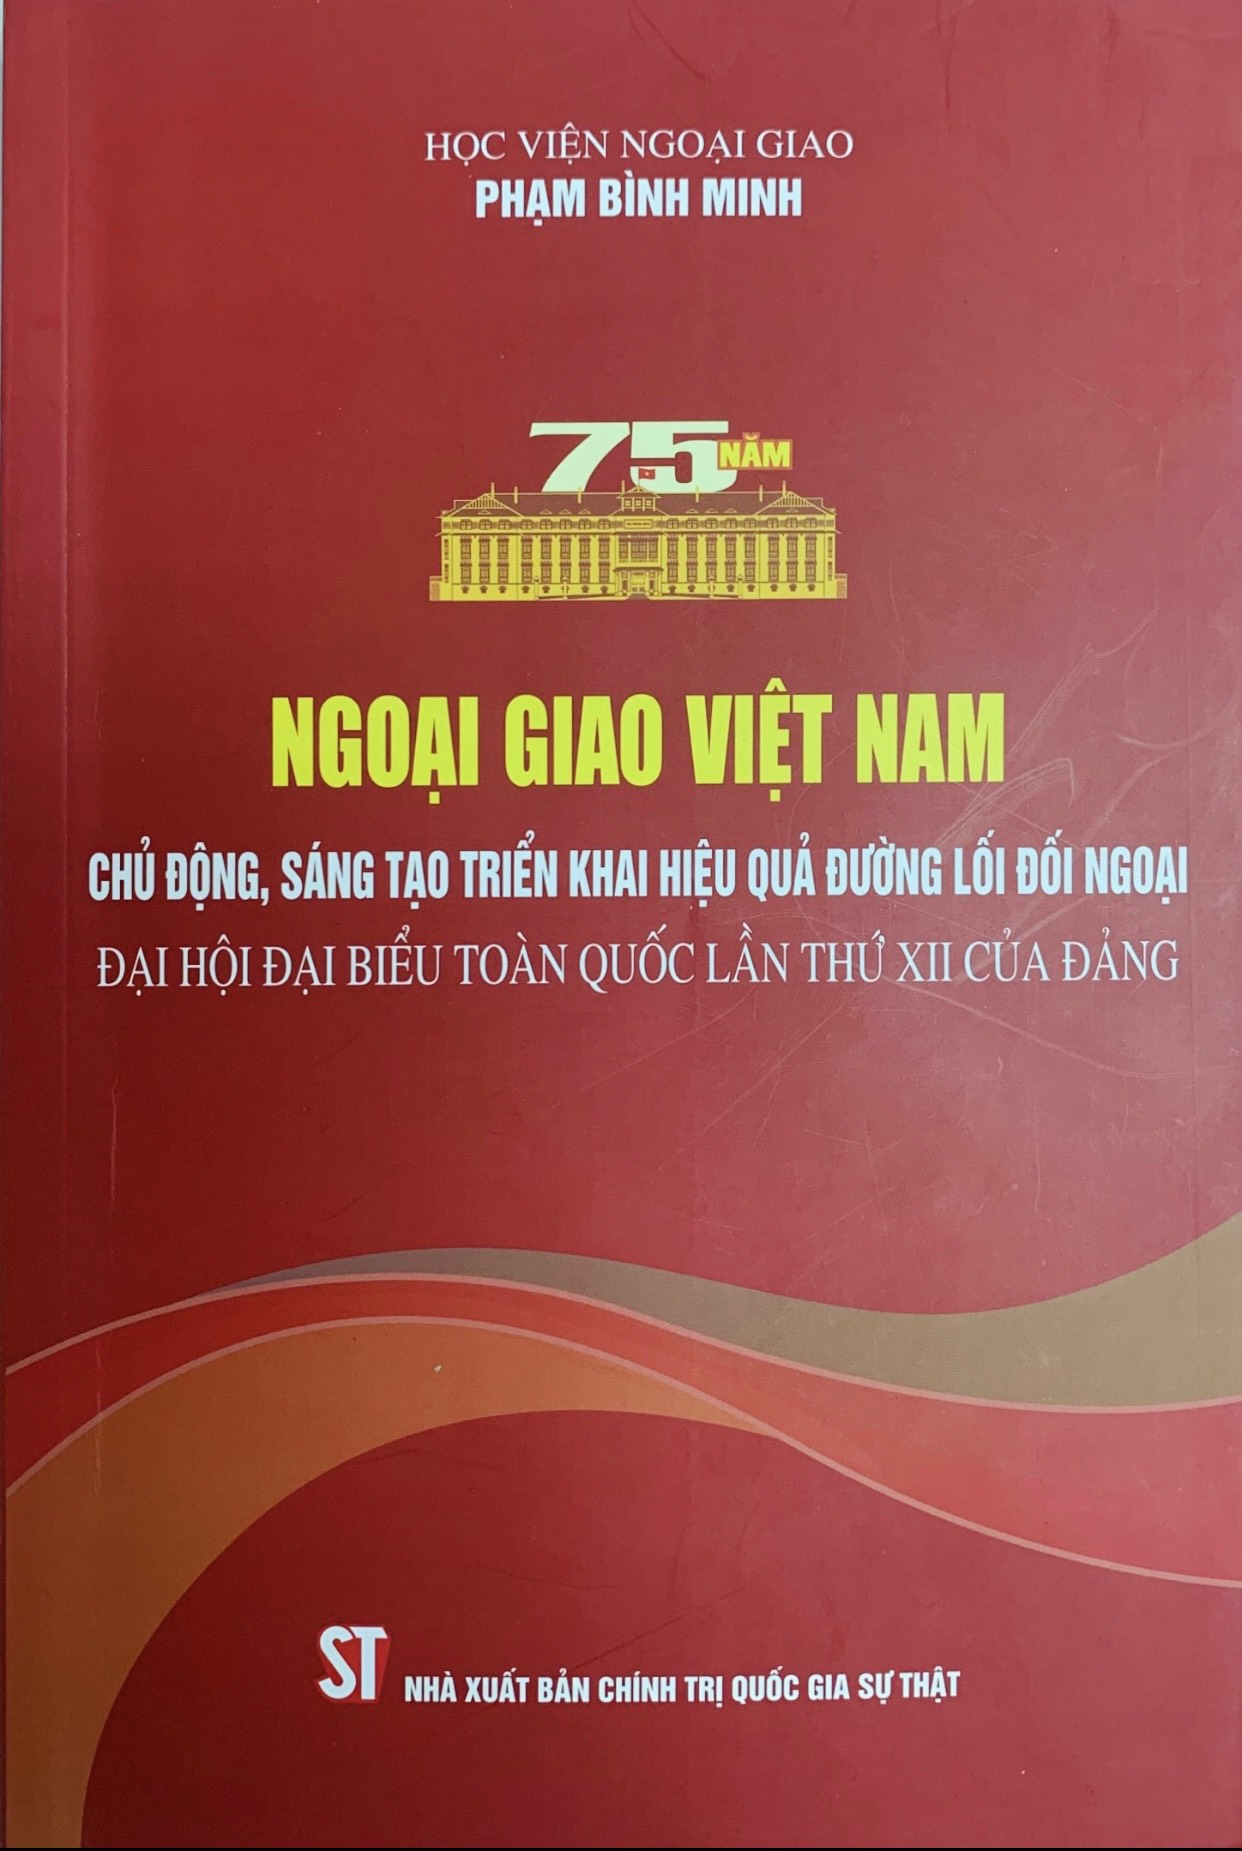 Ngoại giao Việt Nam: Chủ động, sáng tạo triển khai hiệu quả đường lối đối ngoại Đại hội đại biểu toàn quốc lần thứ XII của Đảng